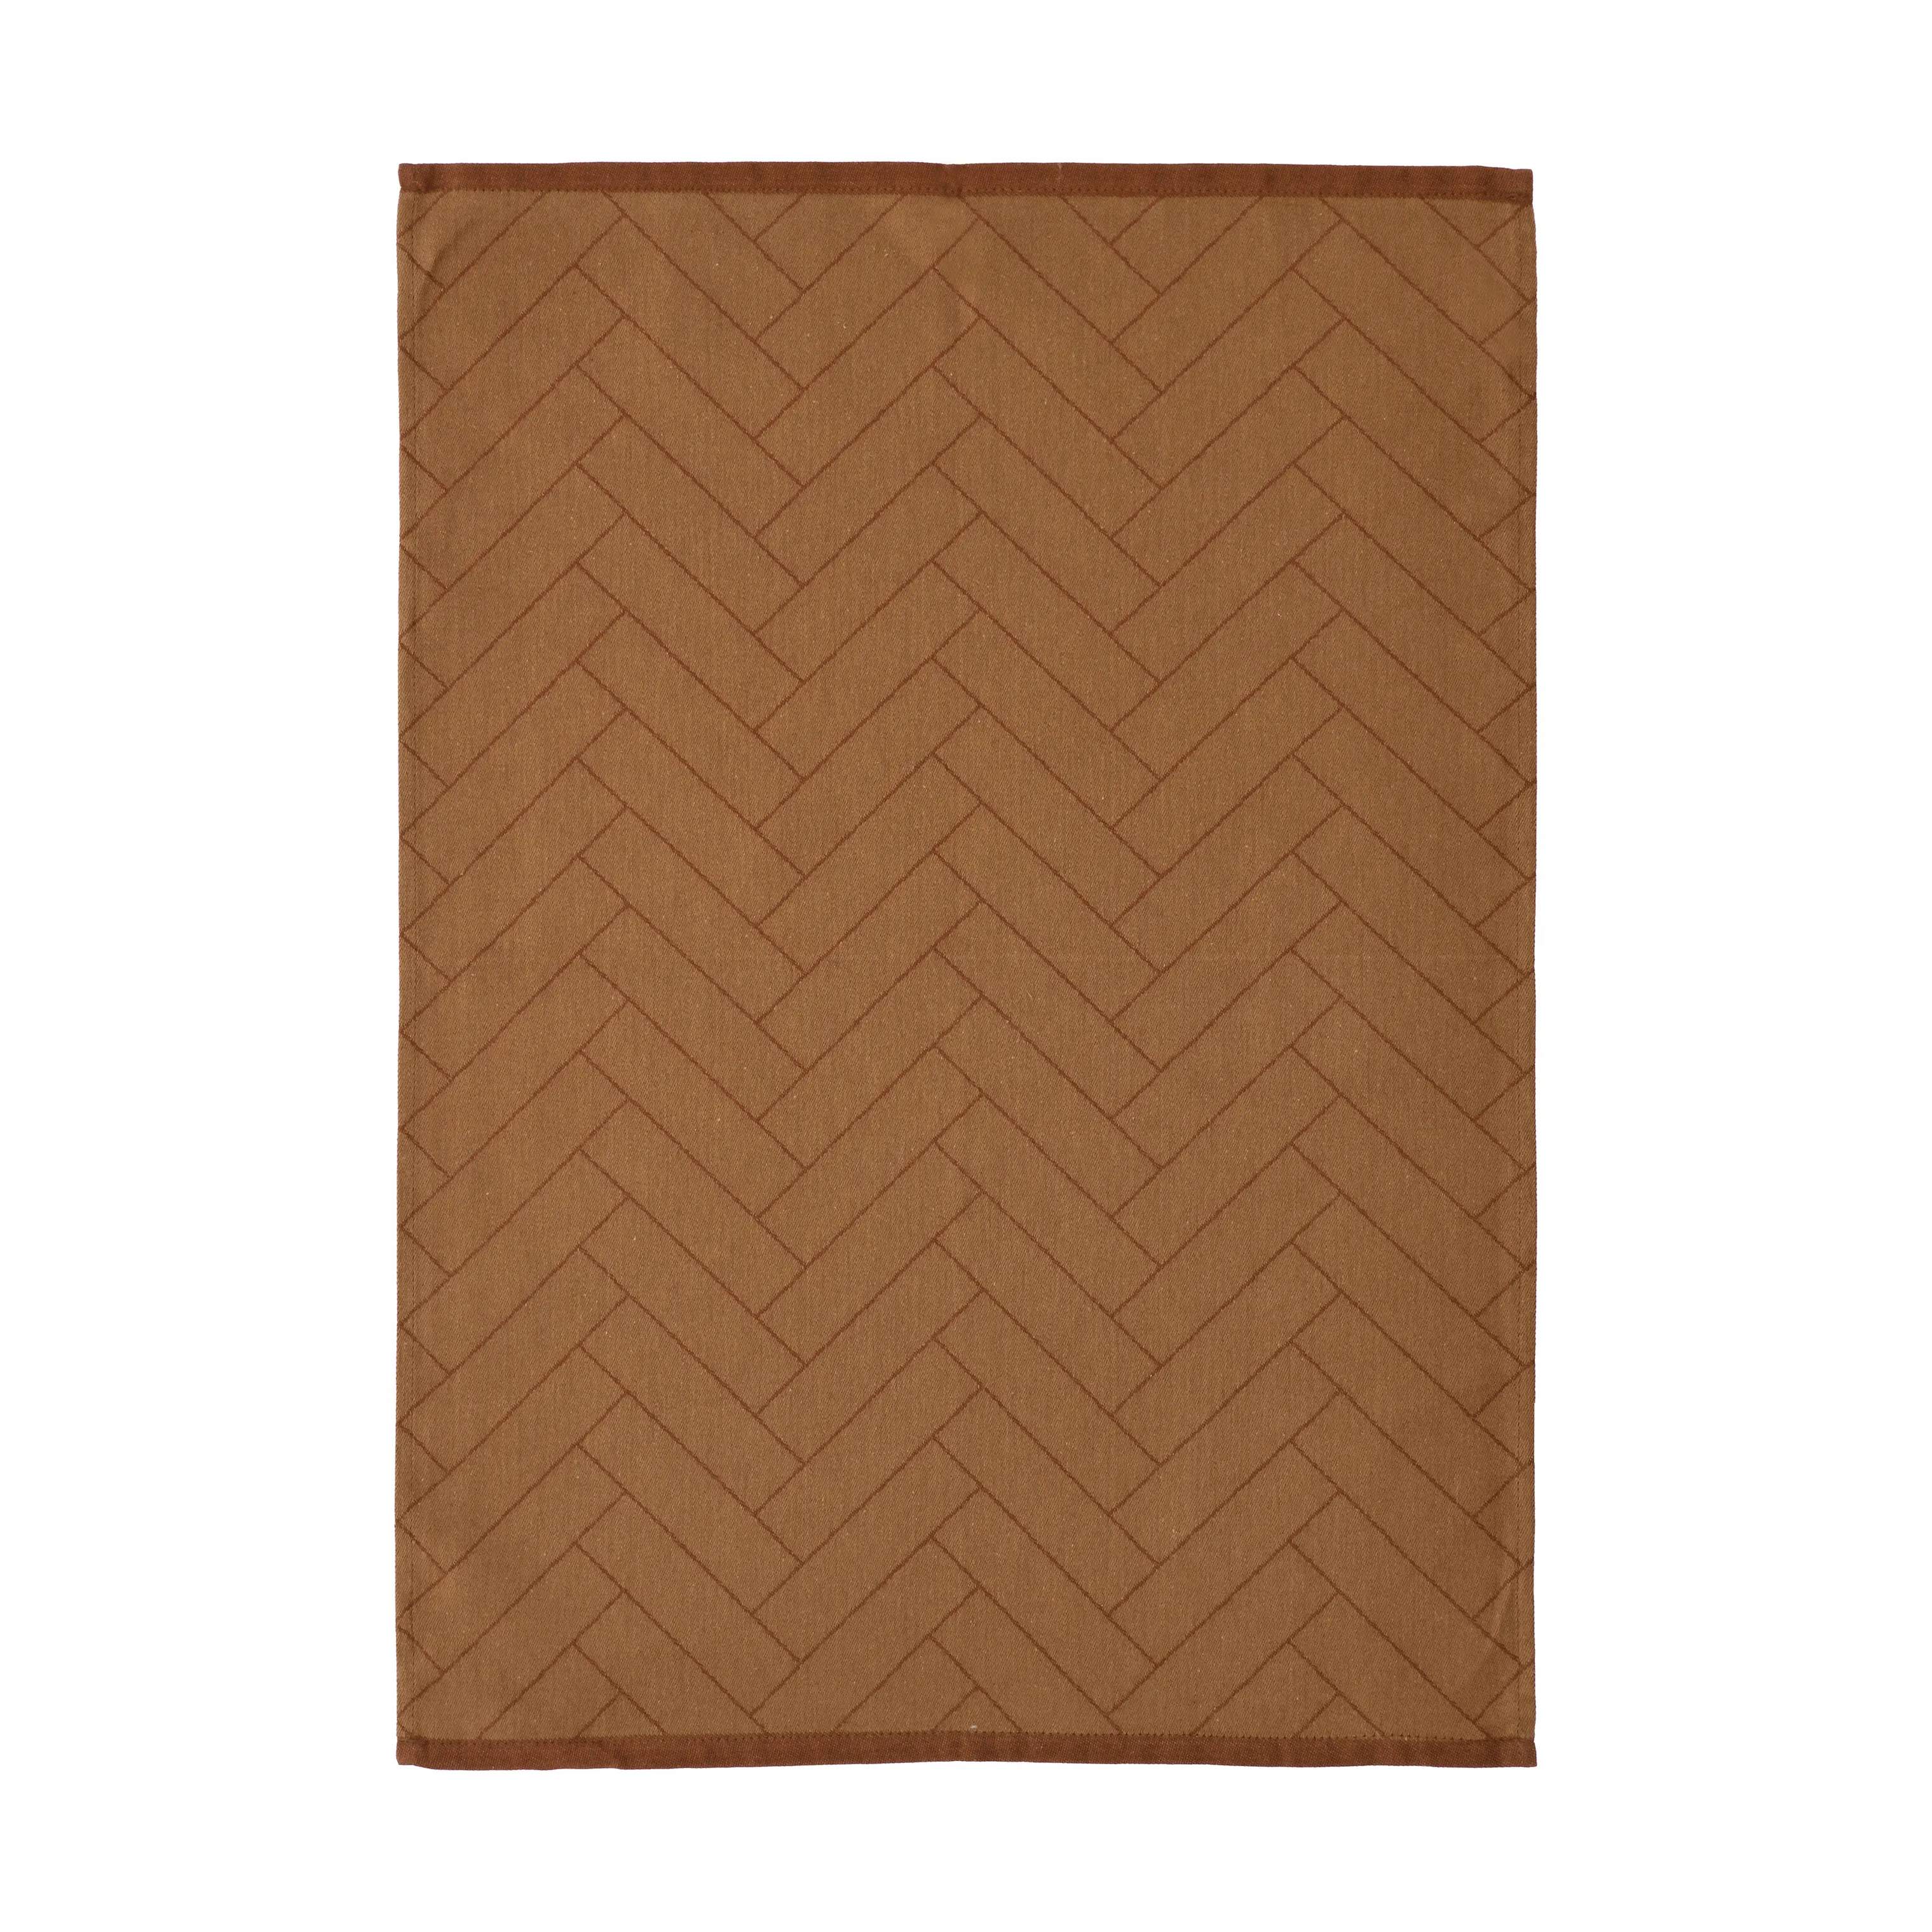 Tiles Viskestykke, brown, large